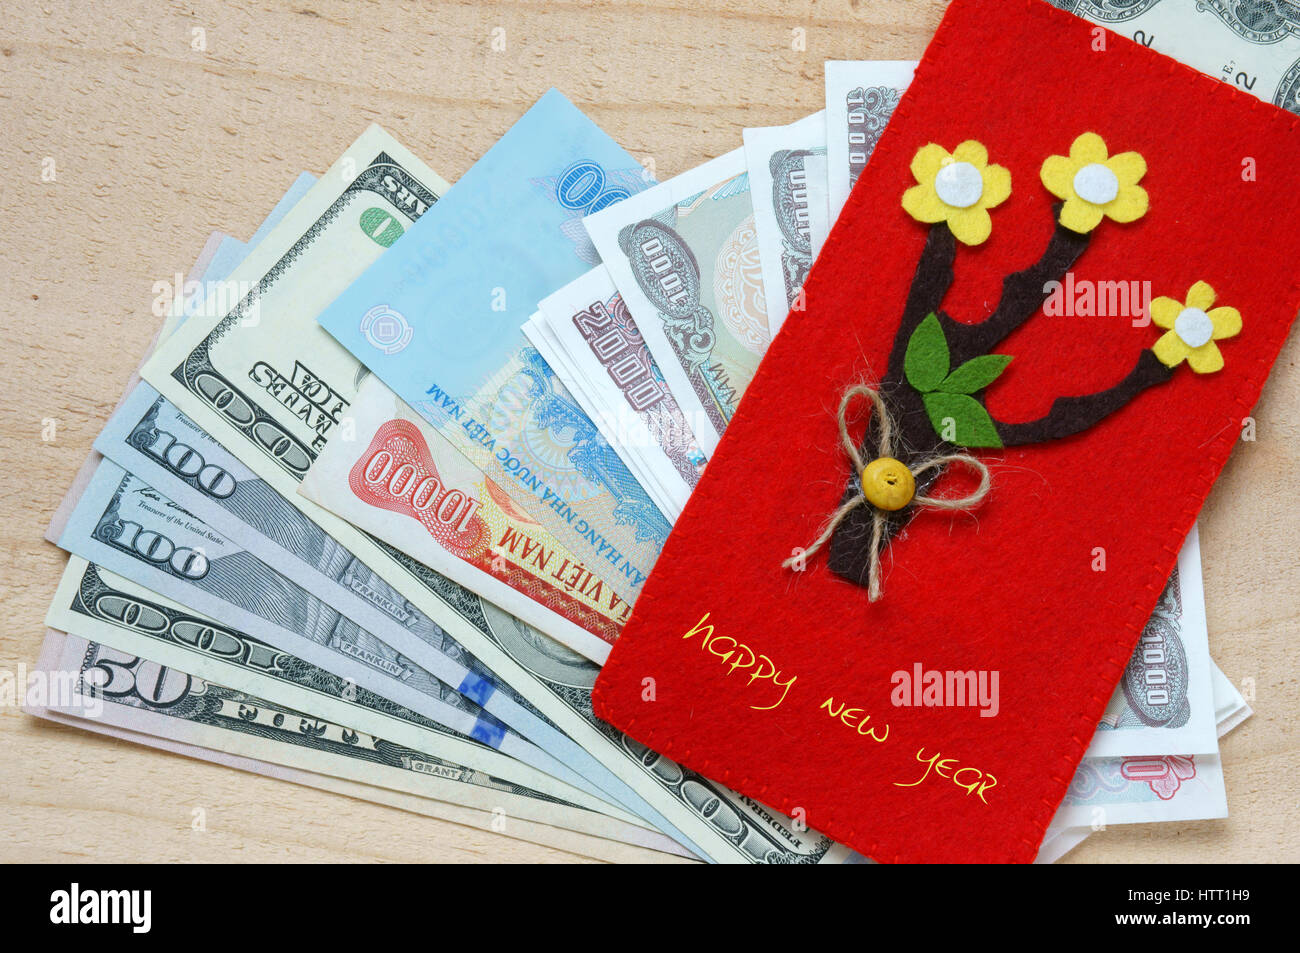 Gewohnheit, benutzerdefinierte Vietnamesen auf Tet ist Glück Geld, eine traditionelle Kultur Vietnam, Kind möchte jemand ein frohes neues Jahr, erhalten rotes Kuvert Stockfoto